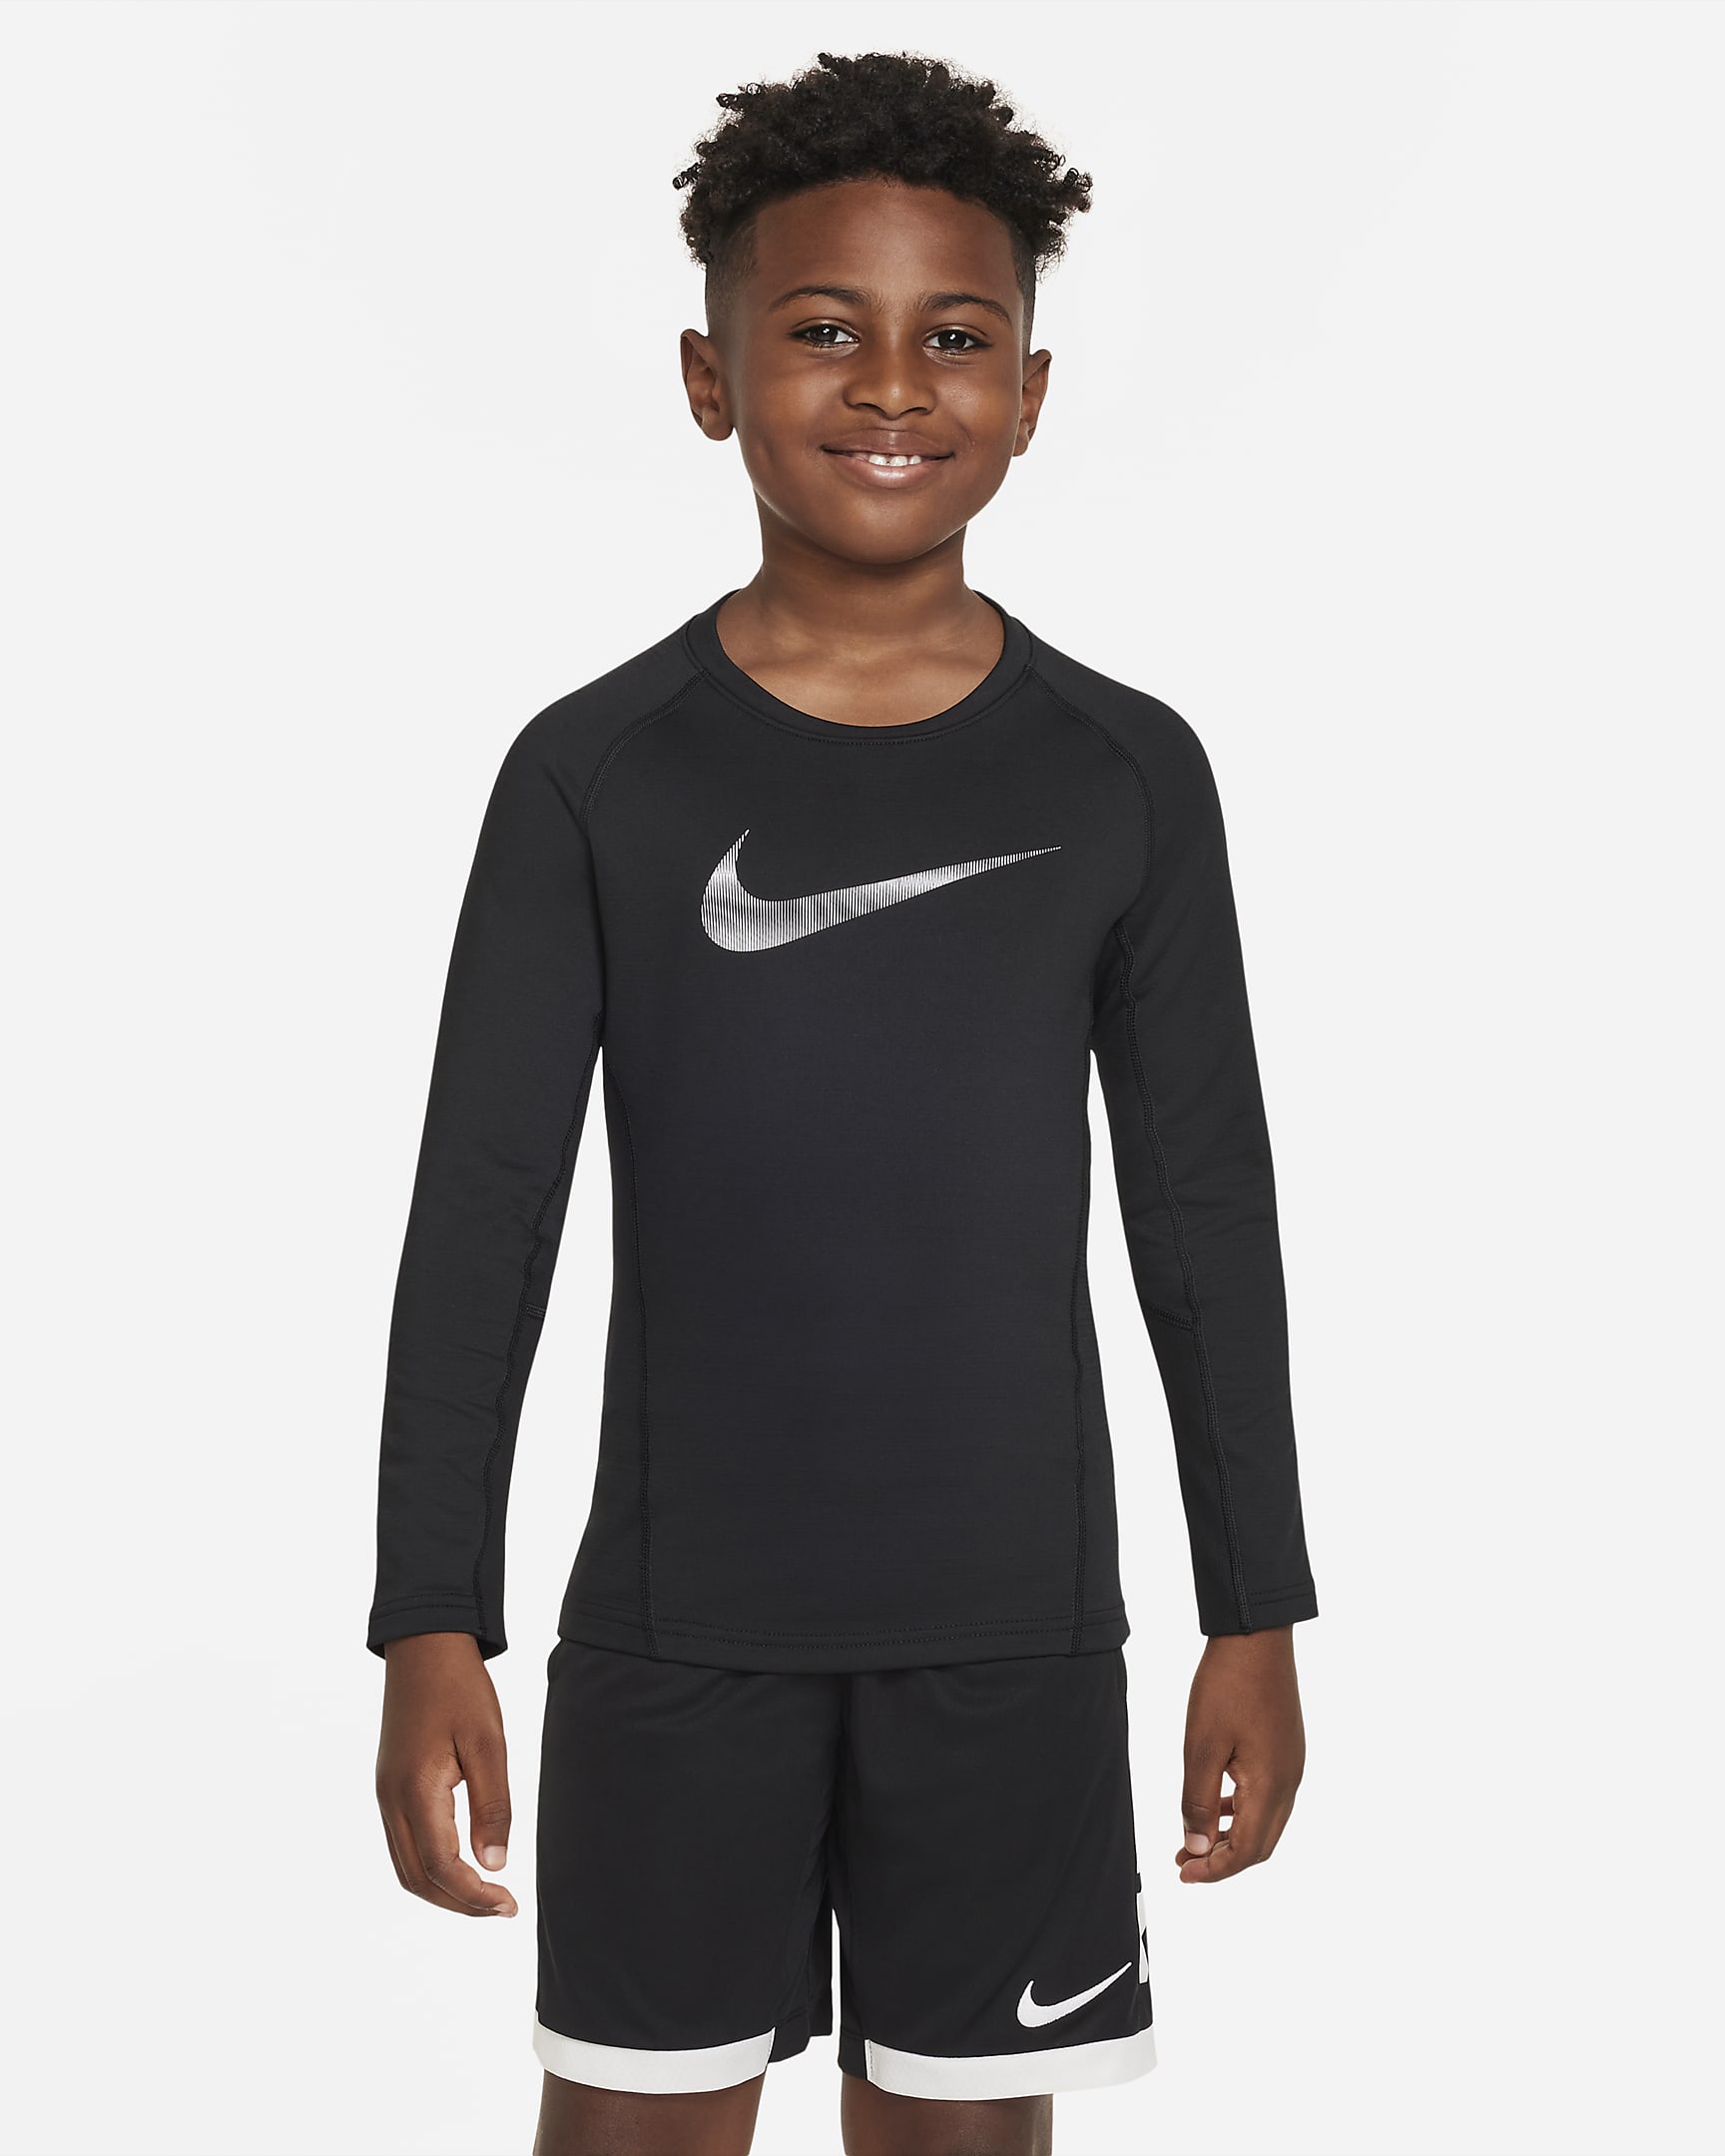 Nike Pro Warm Big Kids' (Boys') Long-Sleeve Top. Nike.com